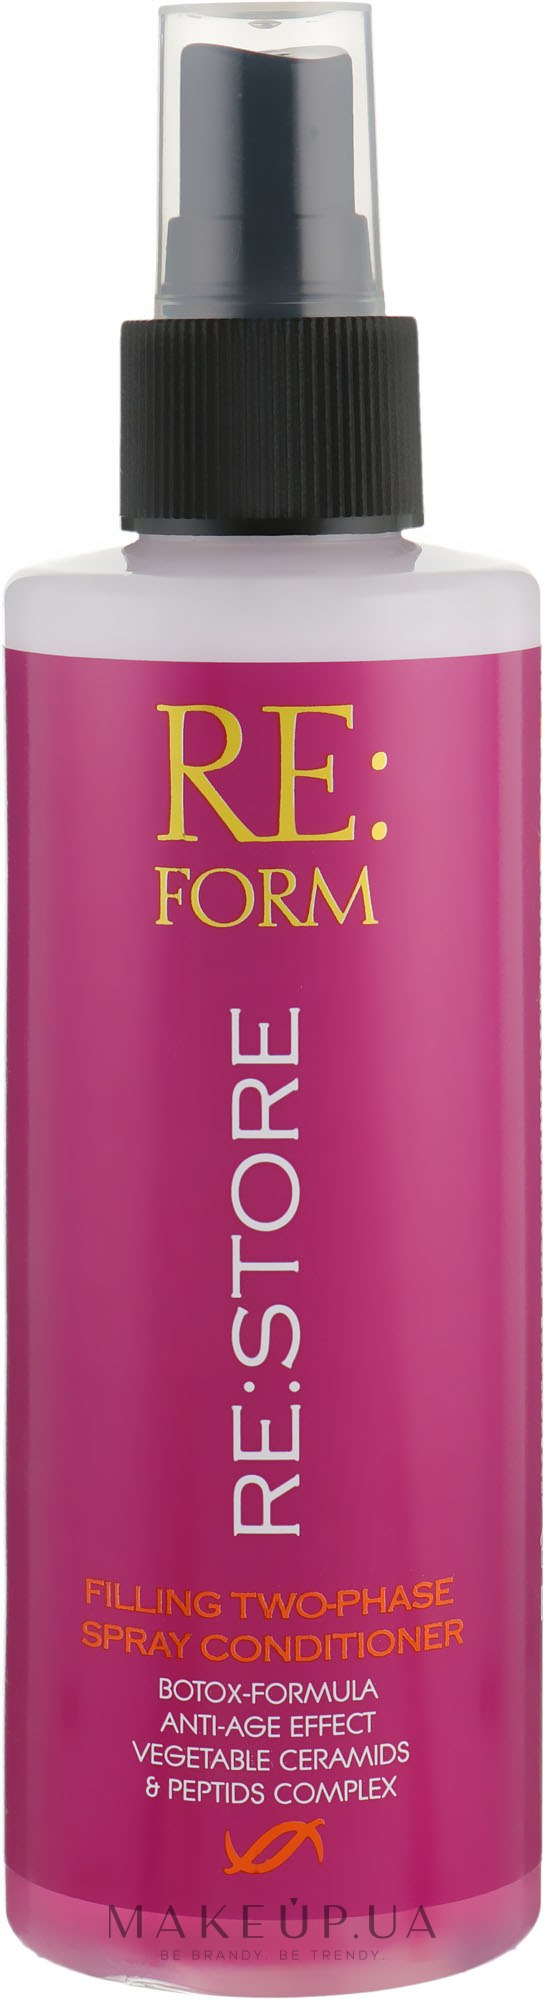 Двофазний спрей-кондиціонер для відновлення волосся - Re:form Re:store Filling Two-Phase Spray Conditioner — фото 200ml